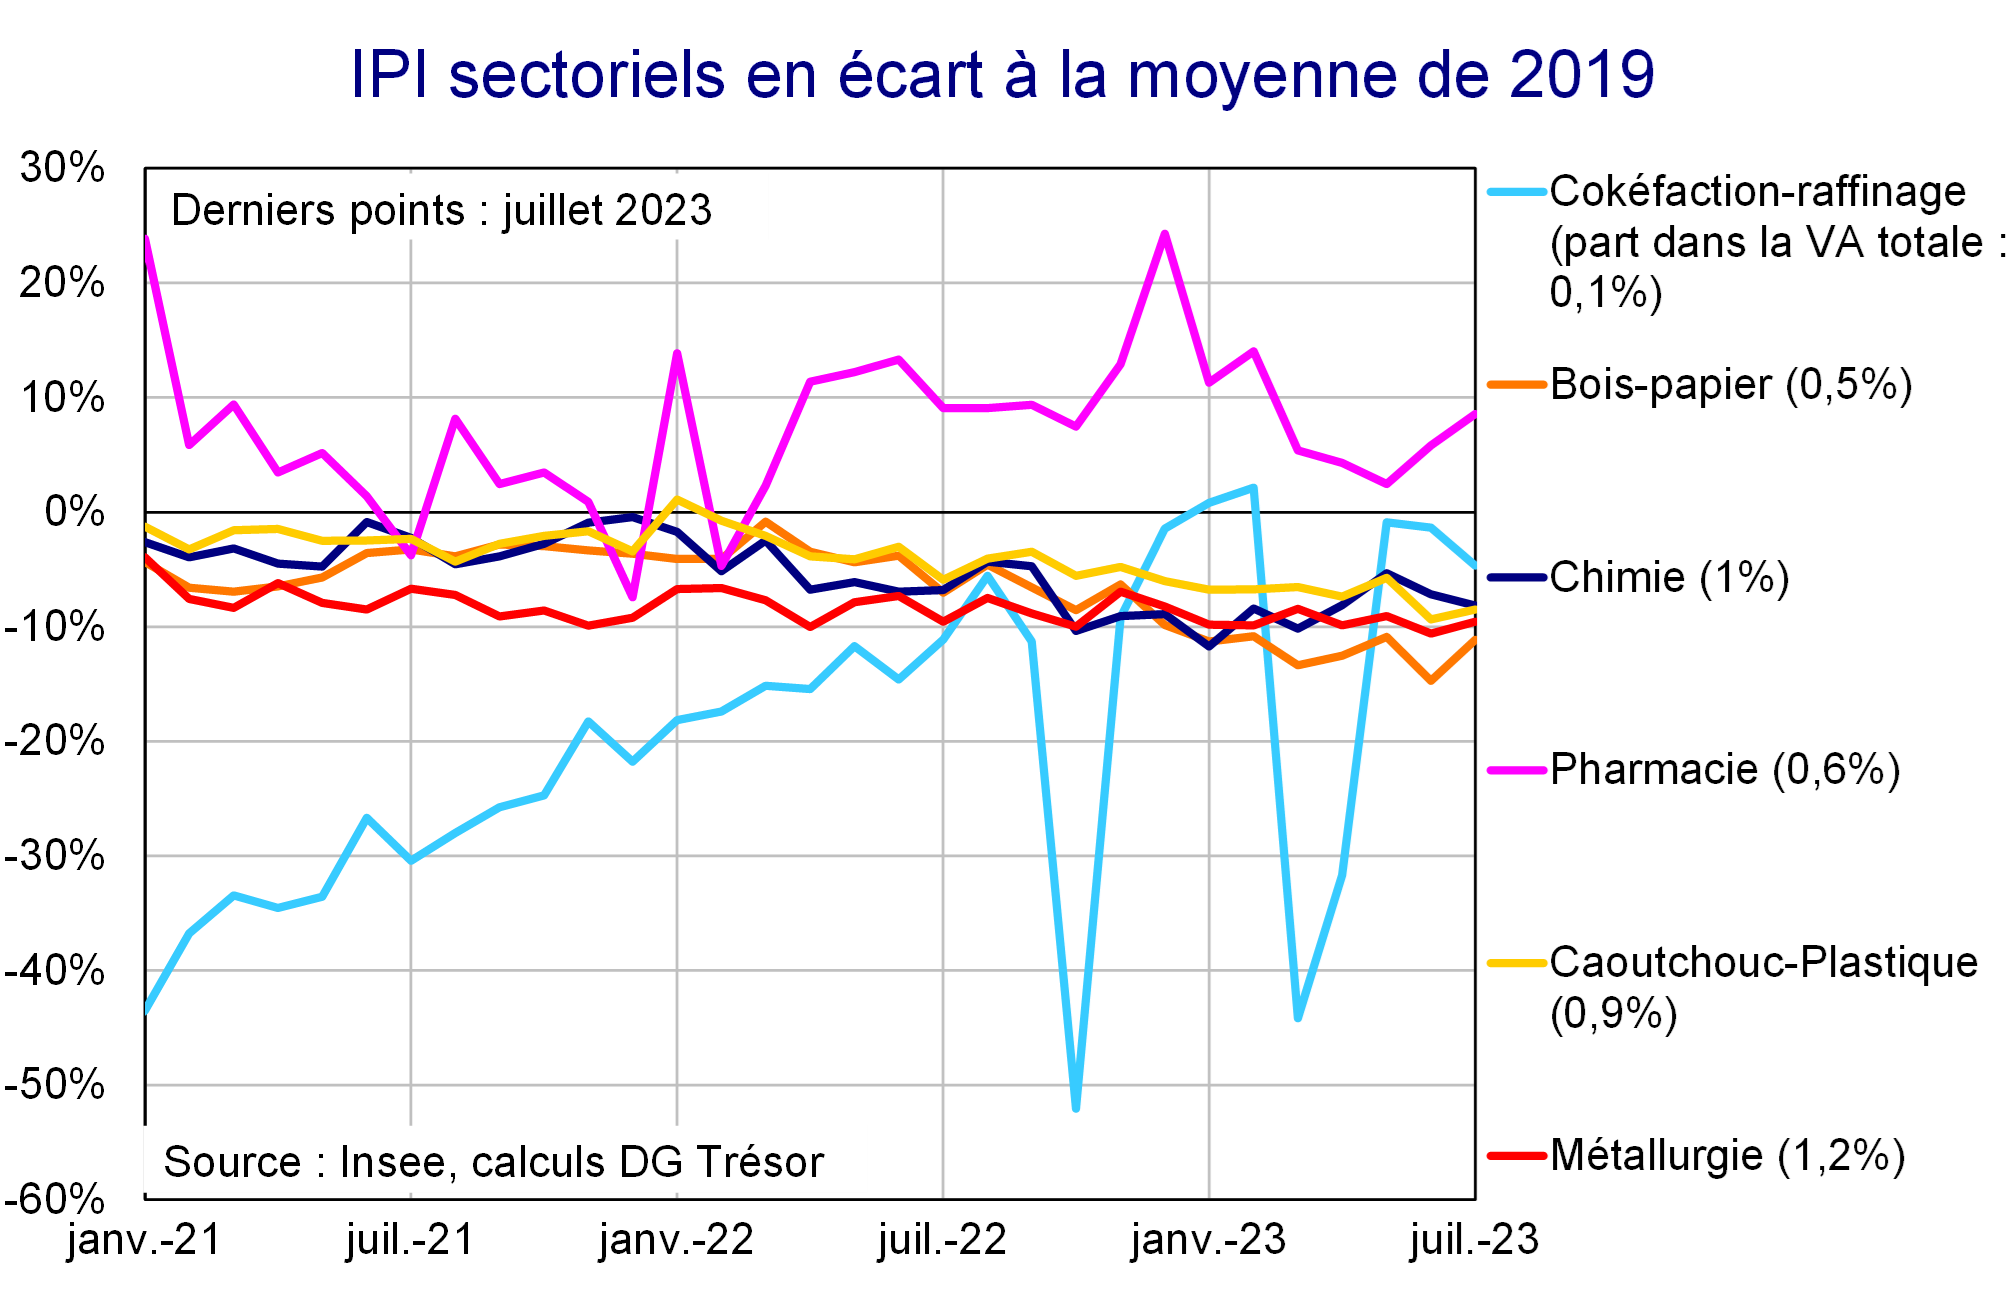 IPI sectoriels en écart à la moyenne de 2019